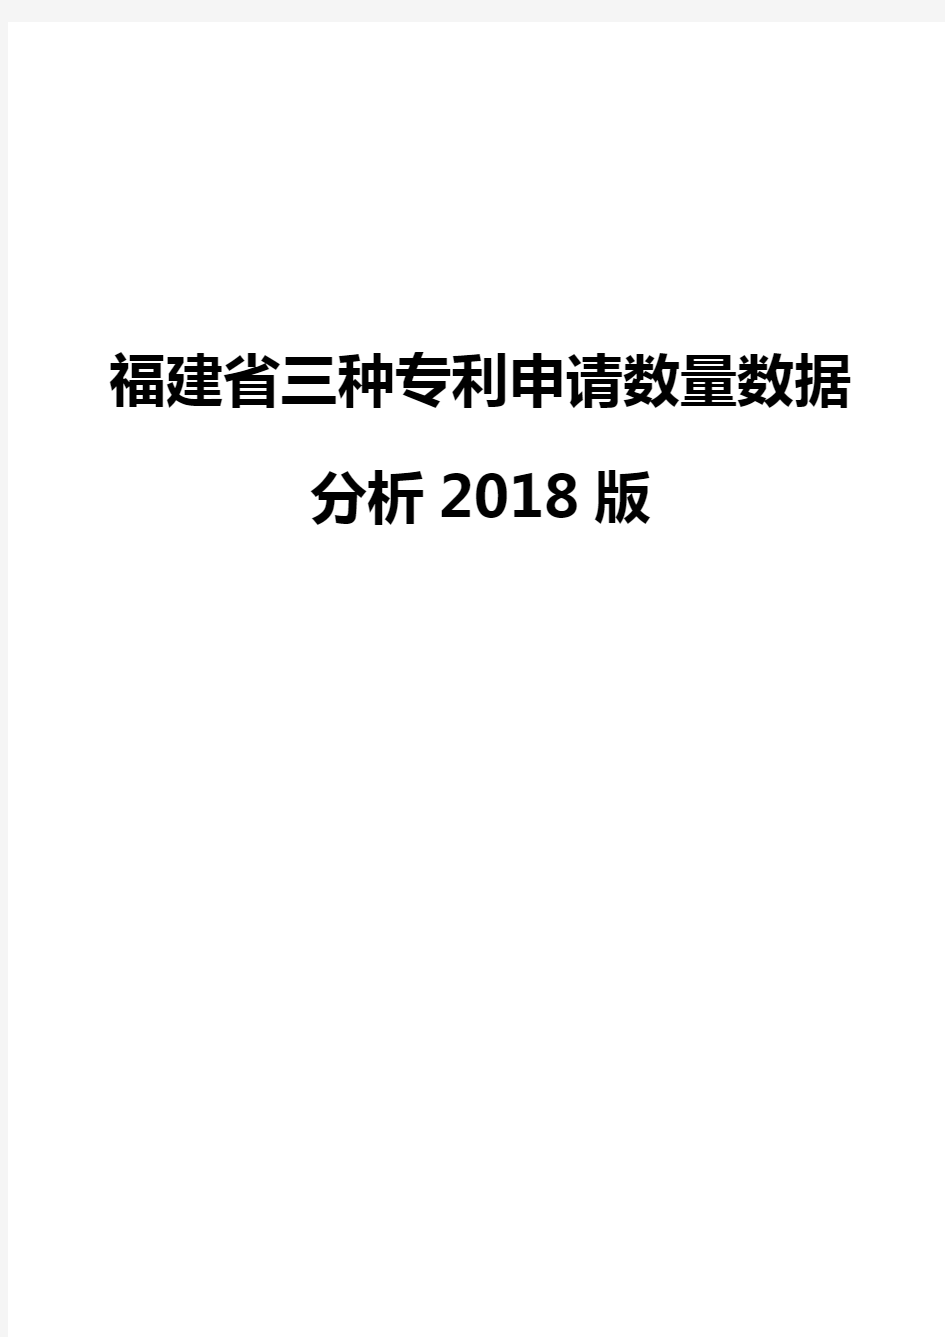 福建省三种专利申请数量数据分析2018版